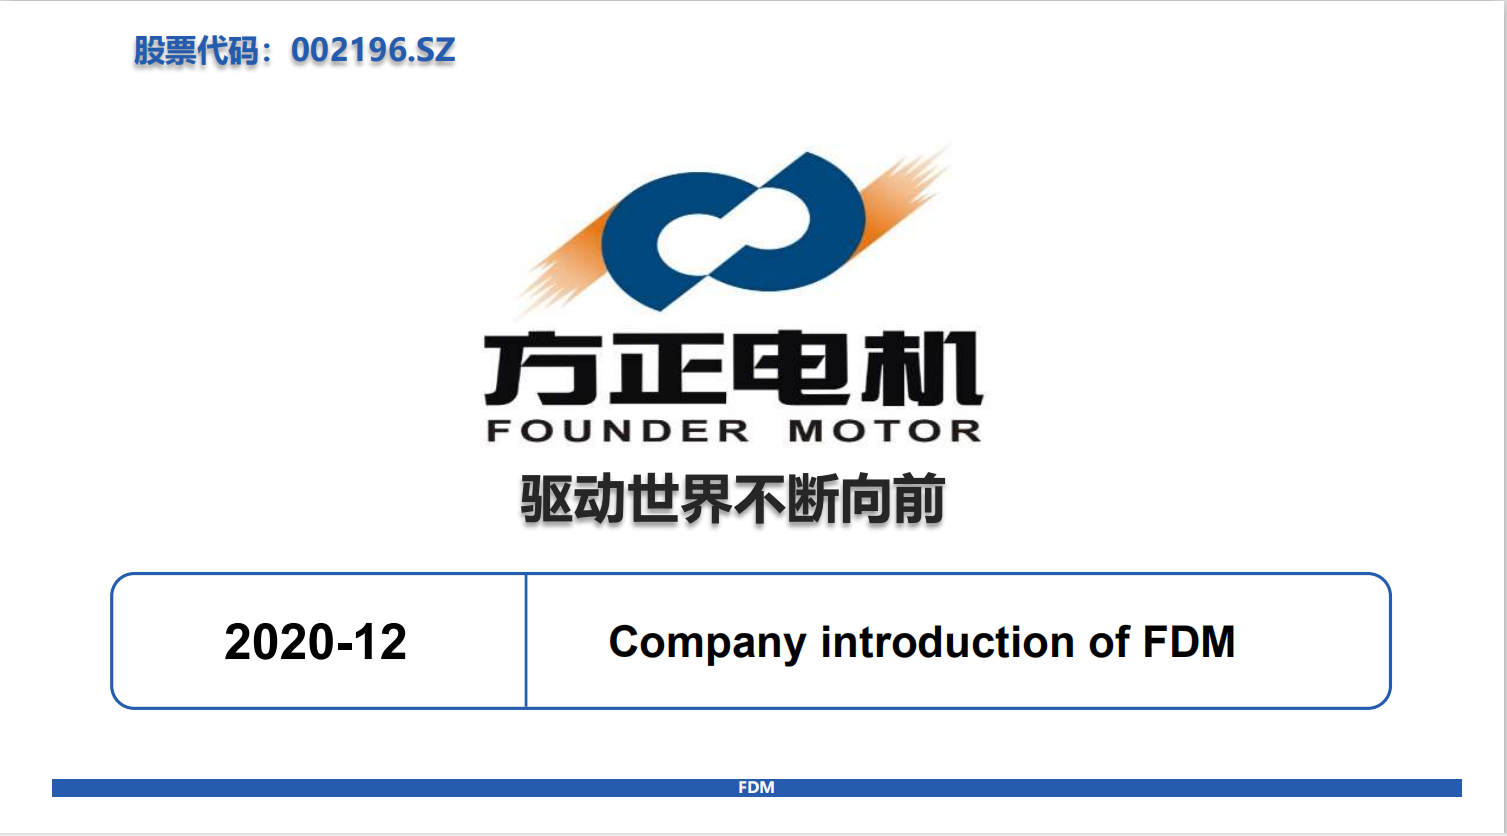 浙江方正电机股份 Zhejiang Founder Motor Co.Ltd